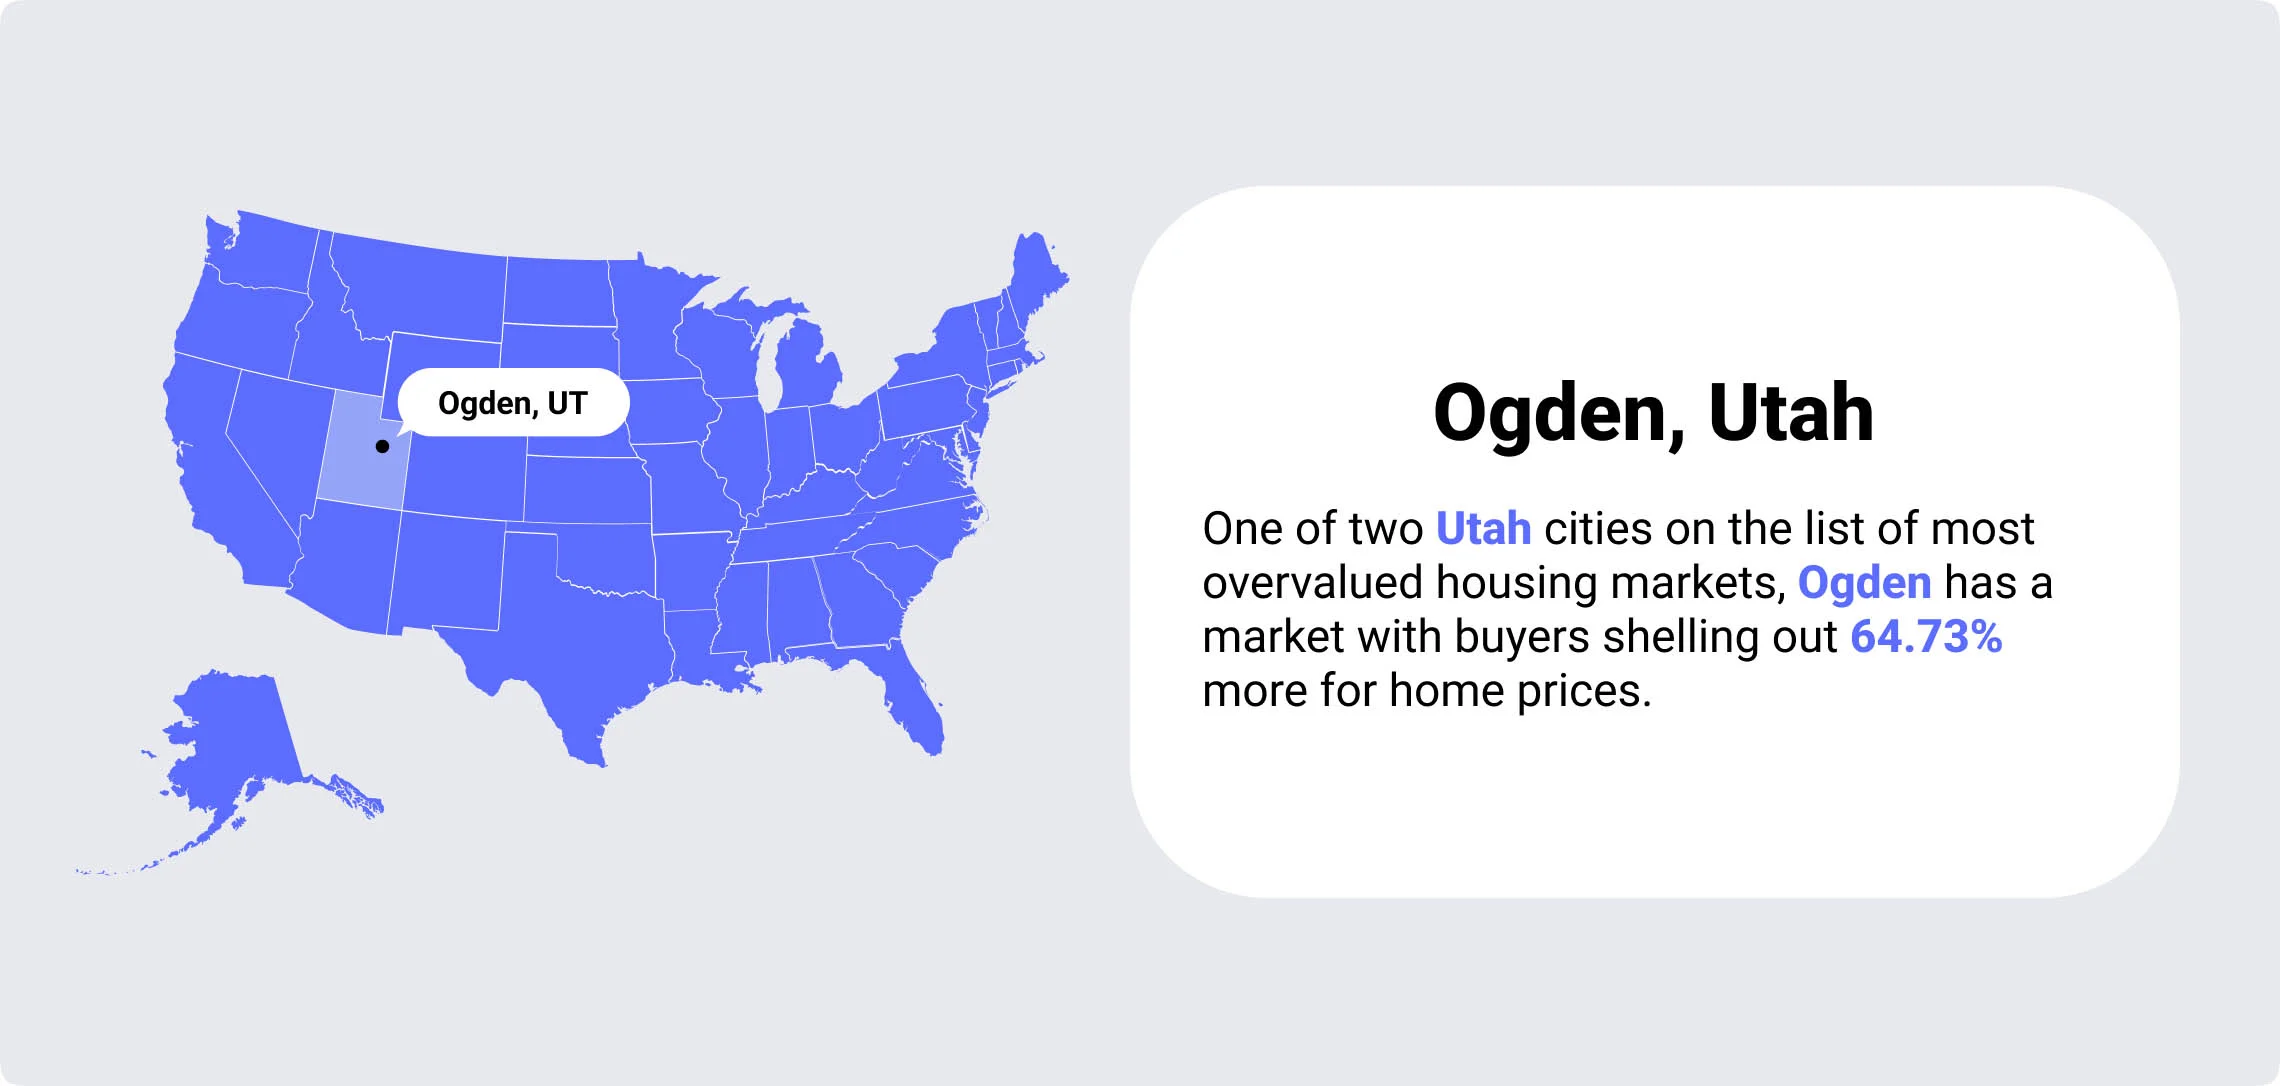 Ogden Utah overvalued housing markets